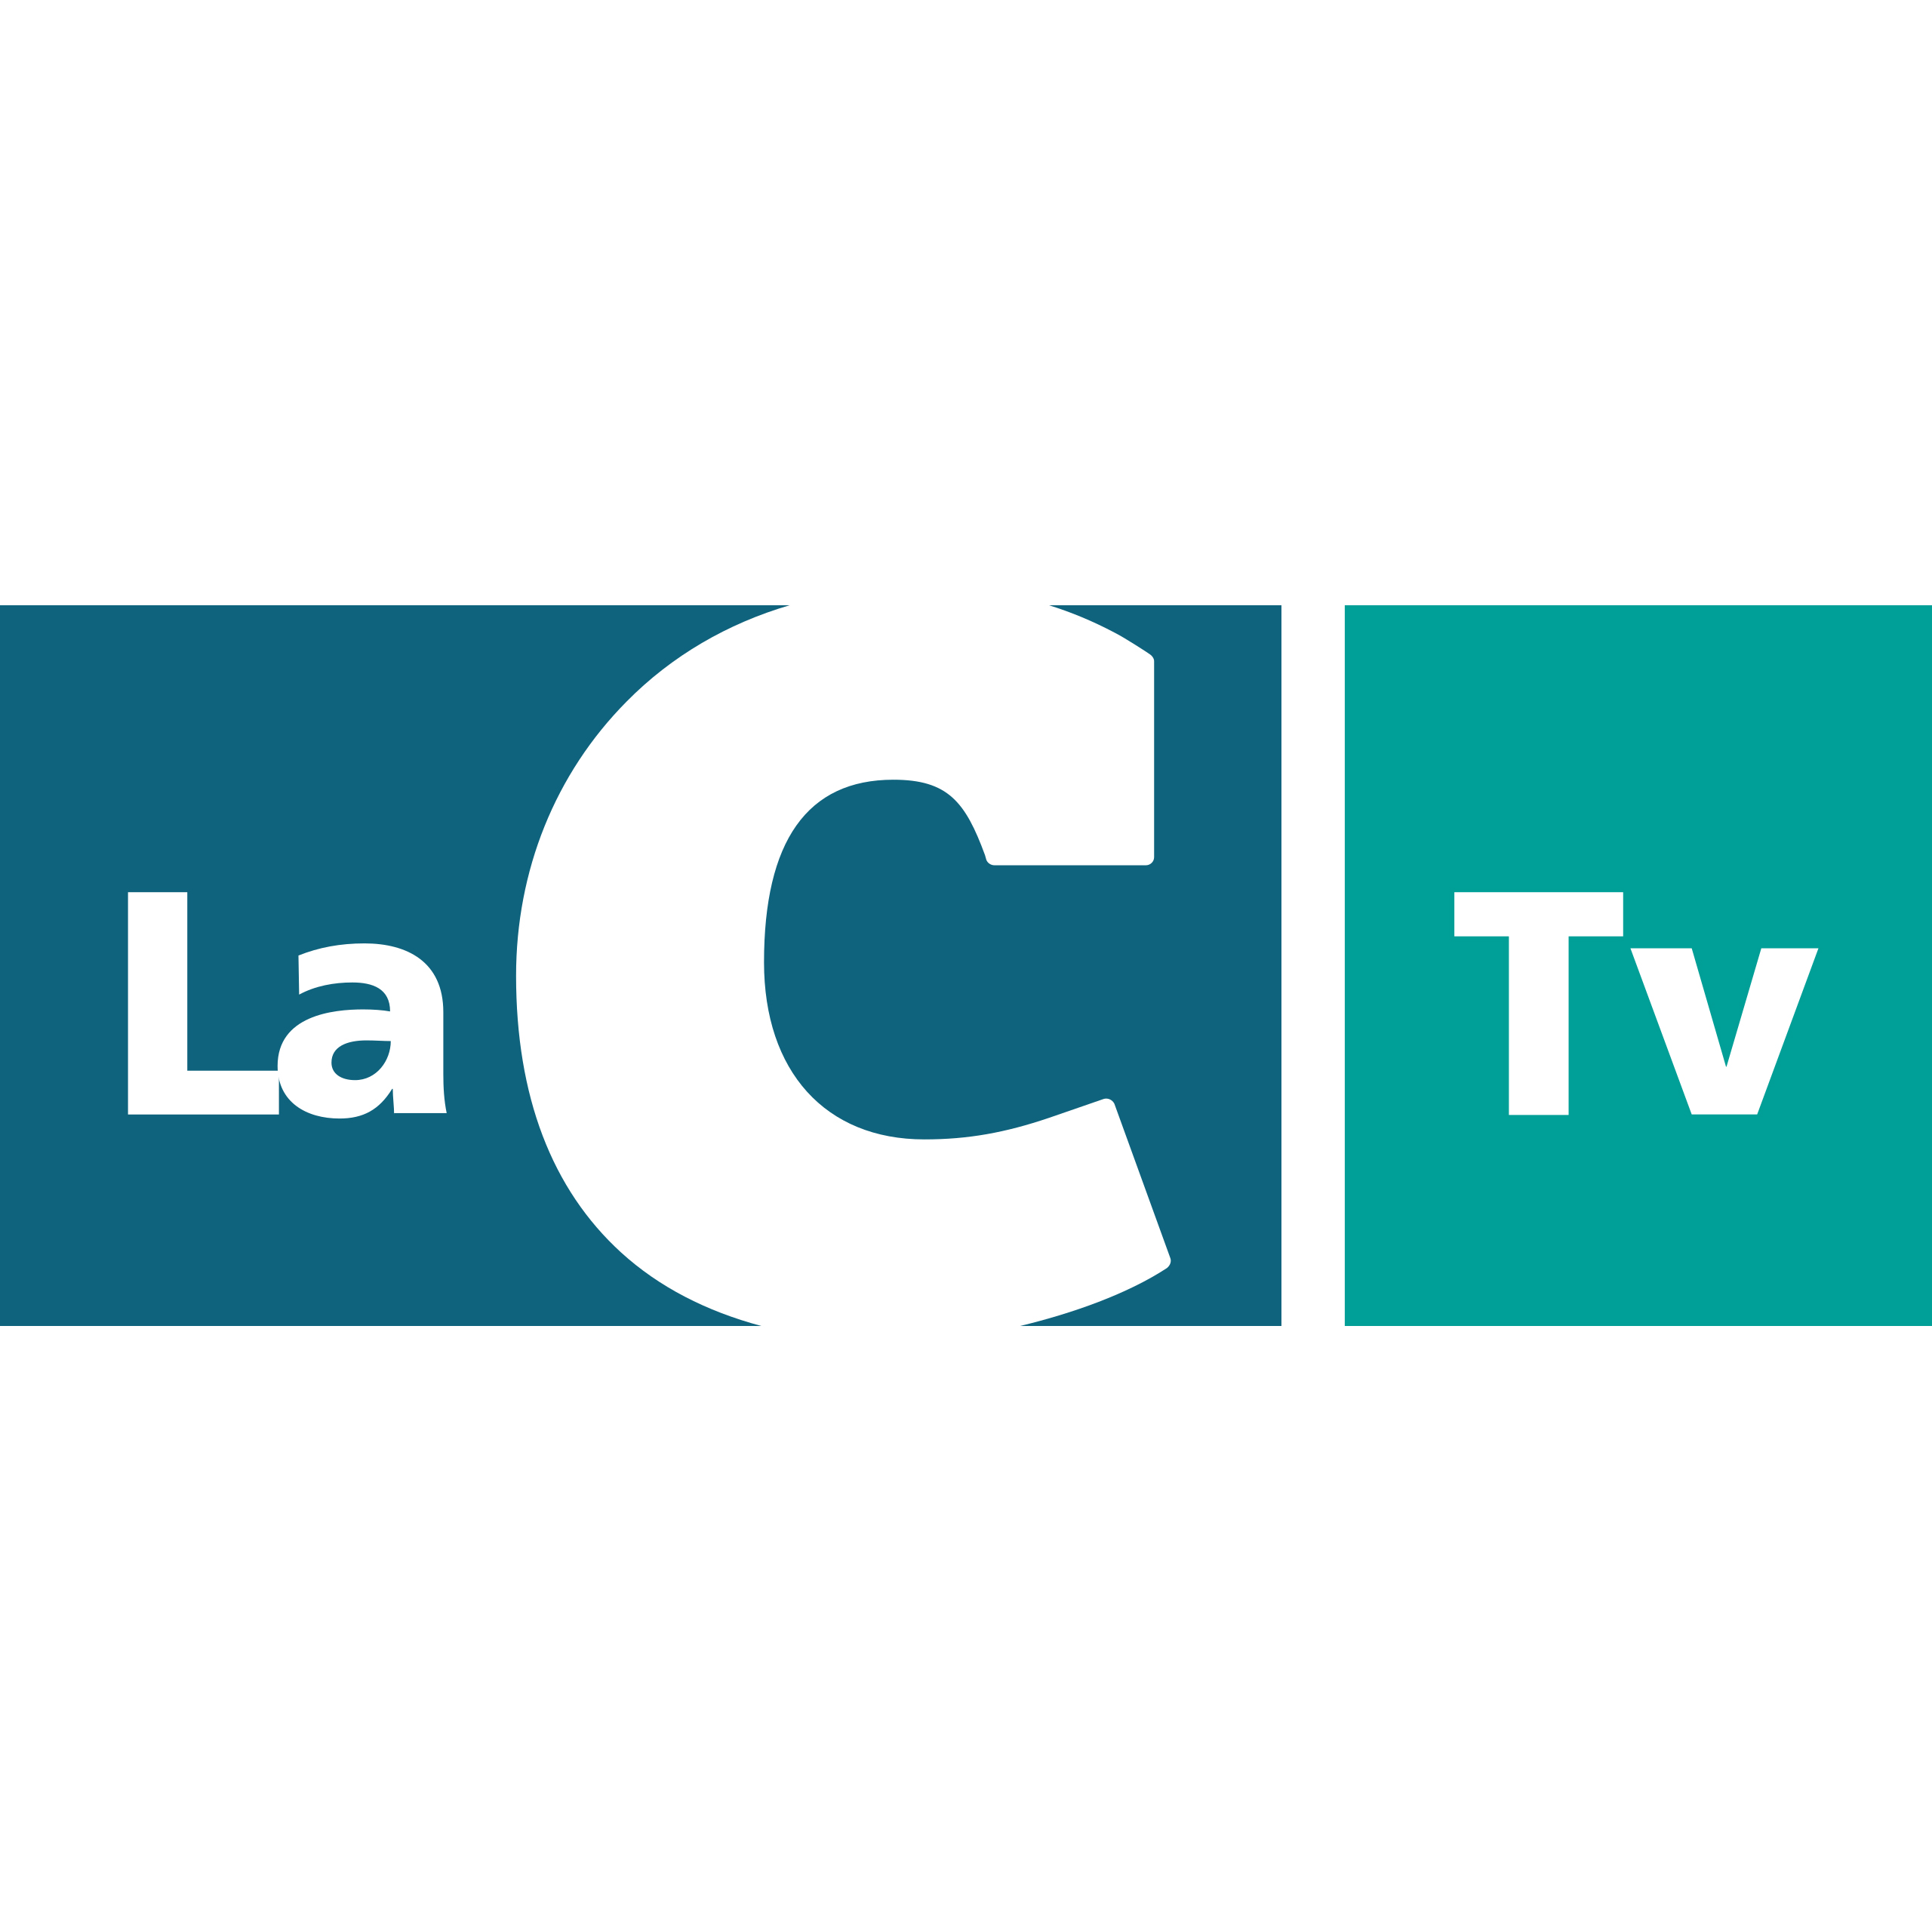 LaC TV